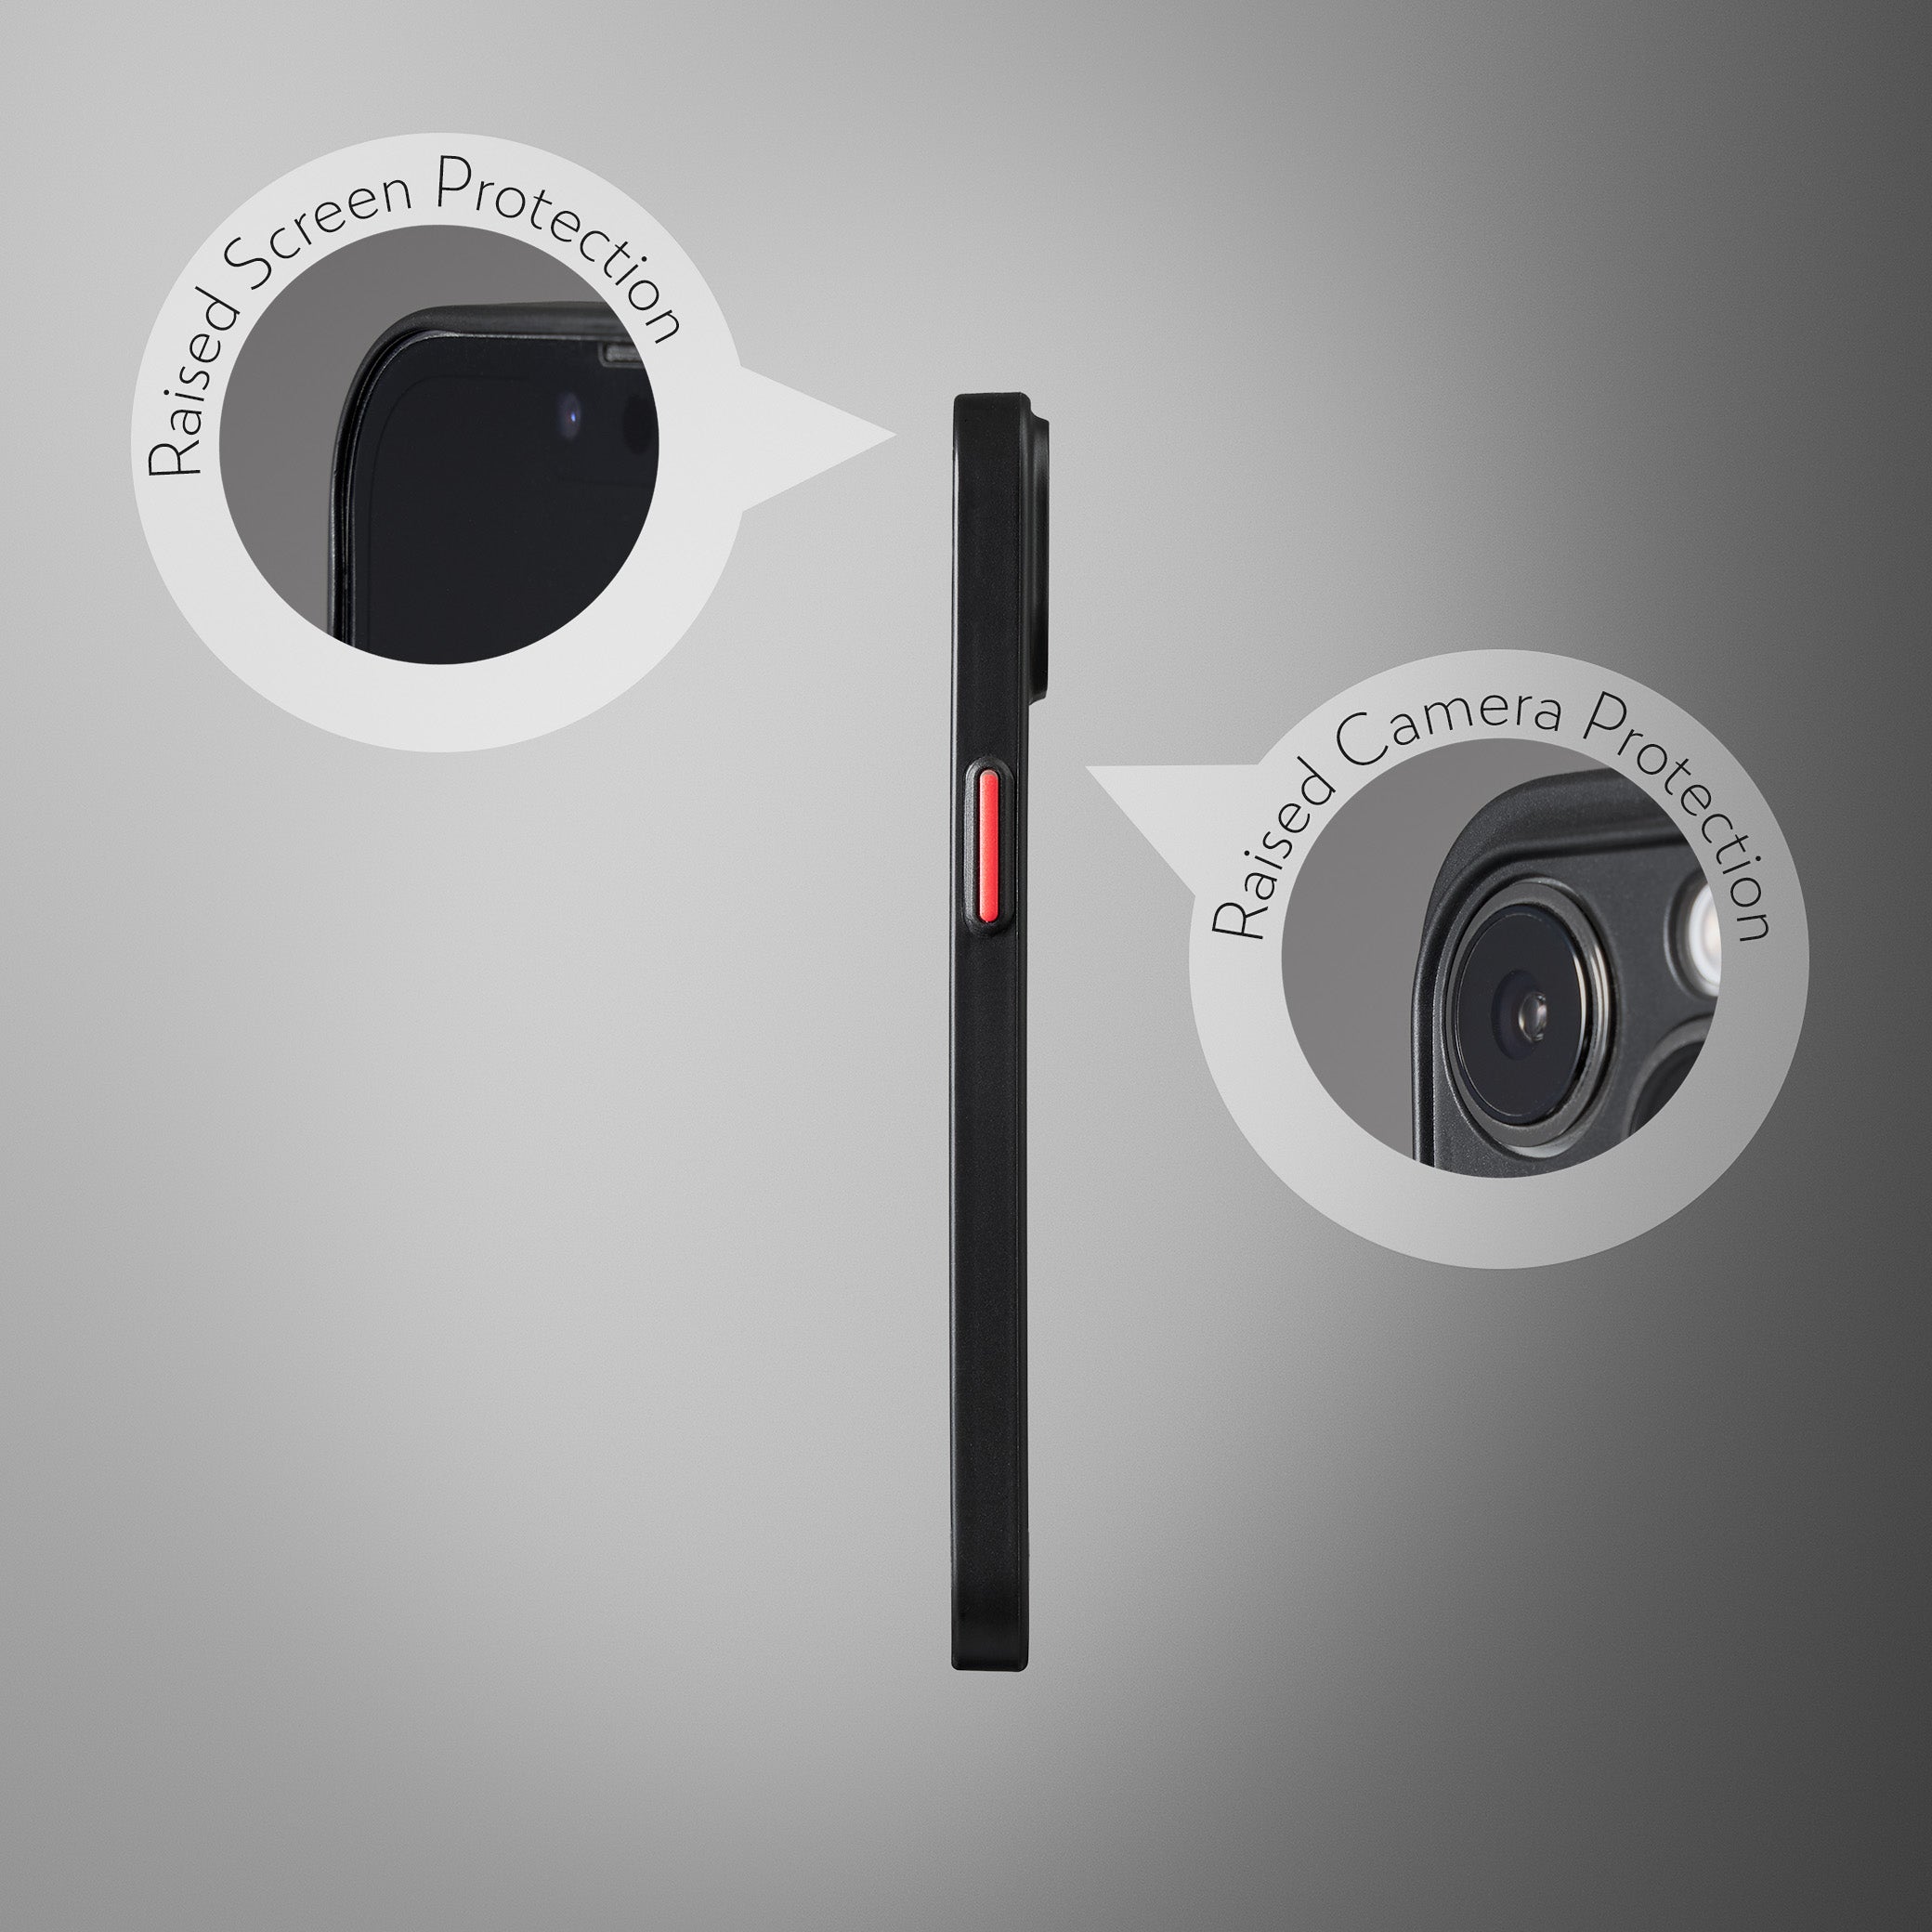 Super Slim Case 2.0 for iPhone 12 - Opaque Black